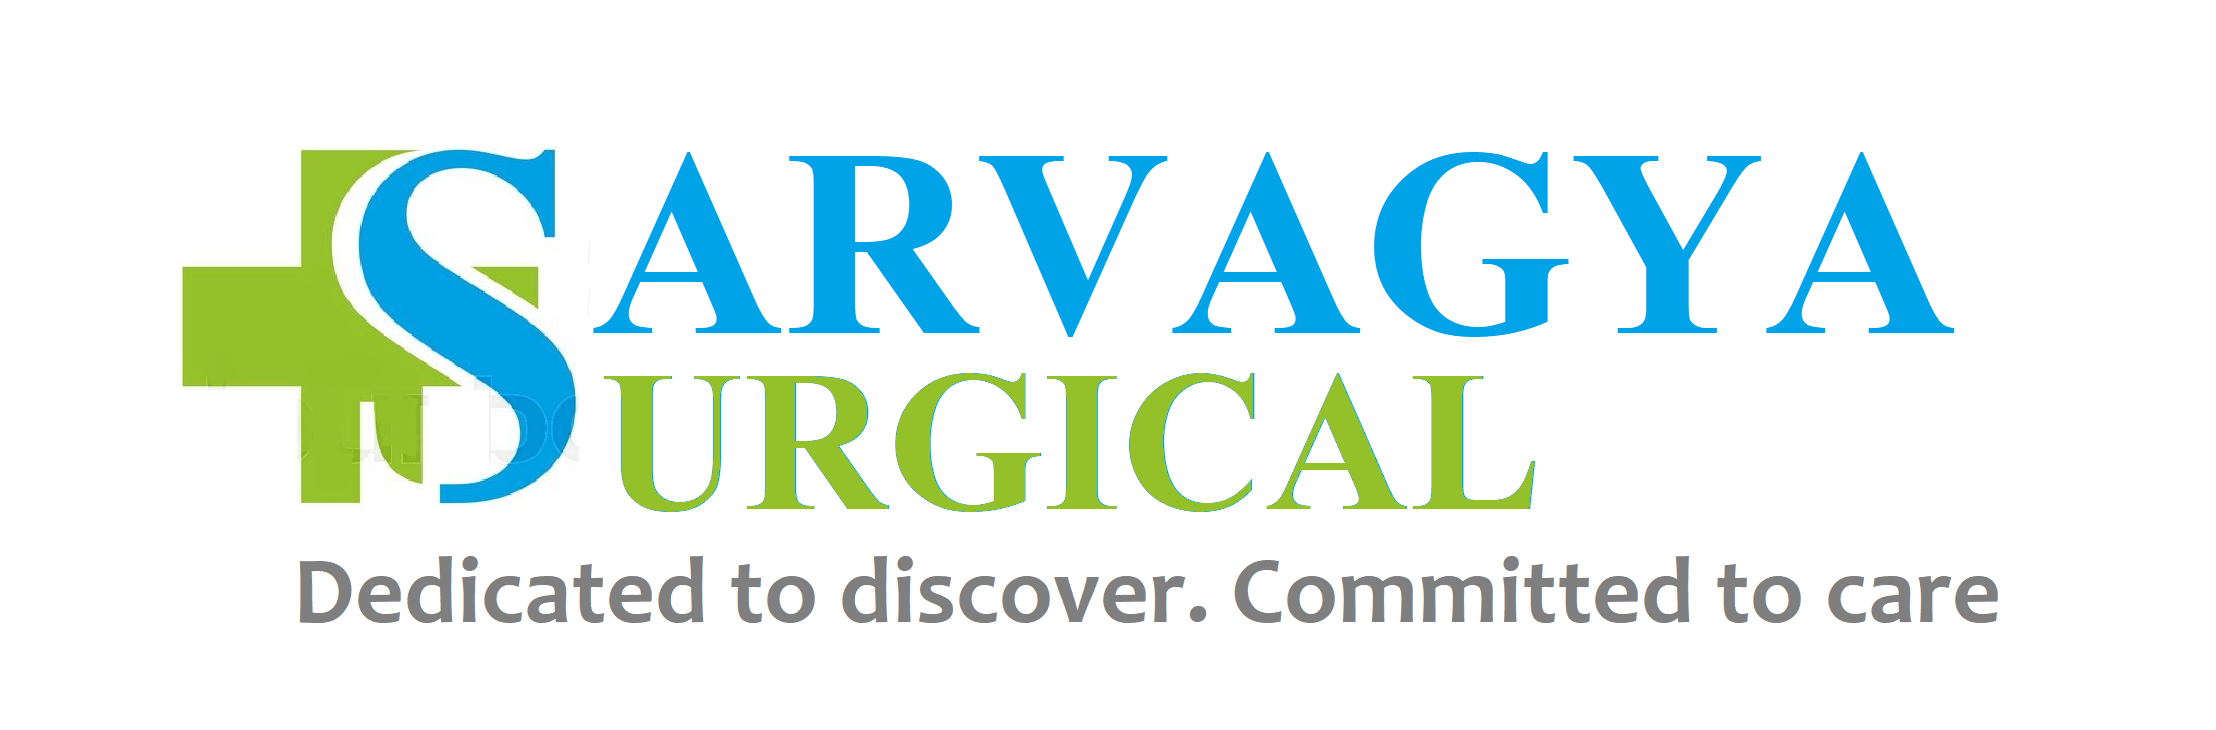 Sarvagya Surgical Pvt. Ltd.